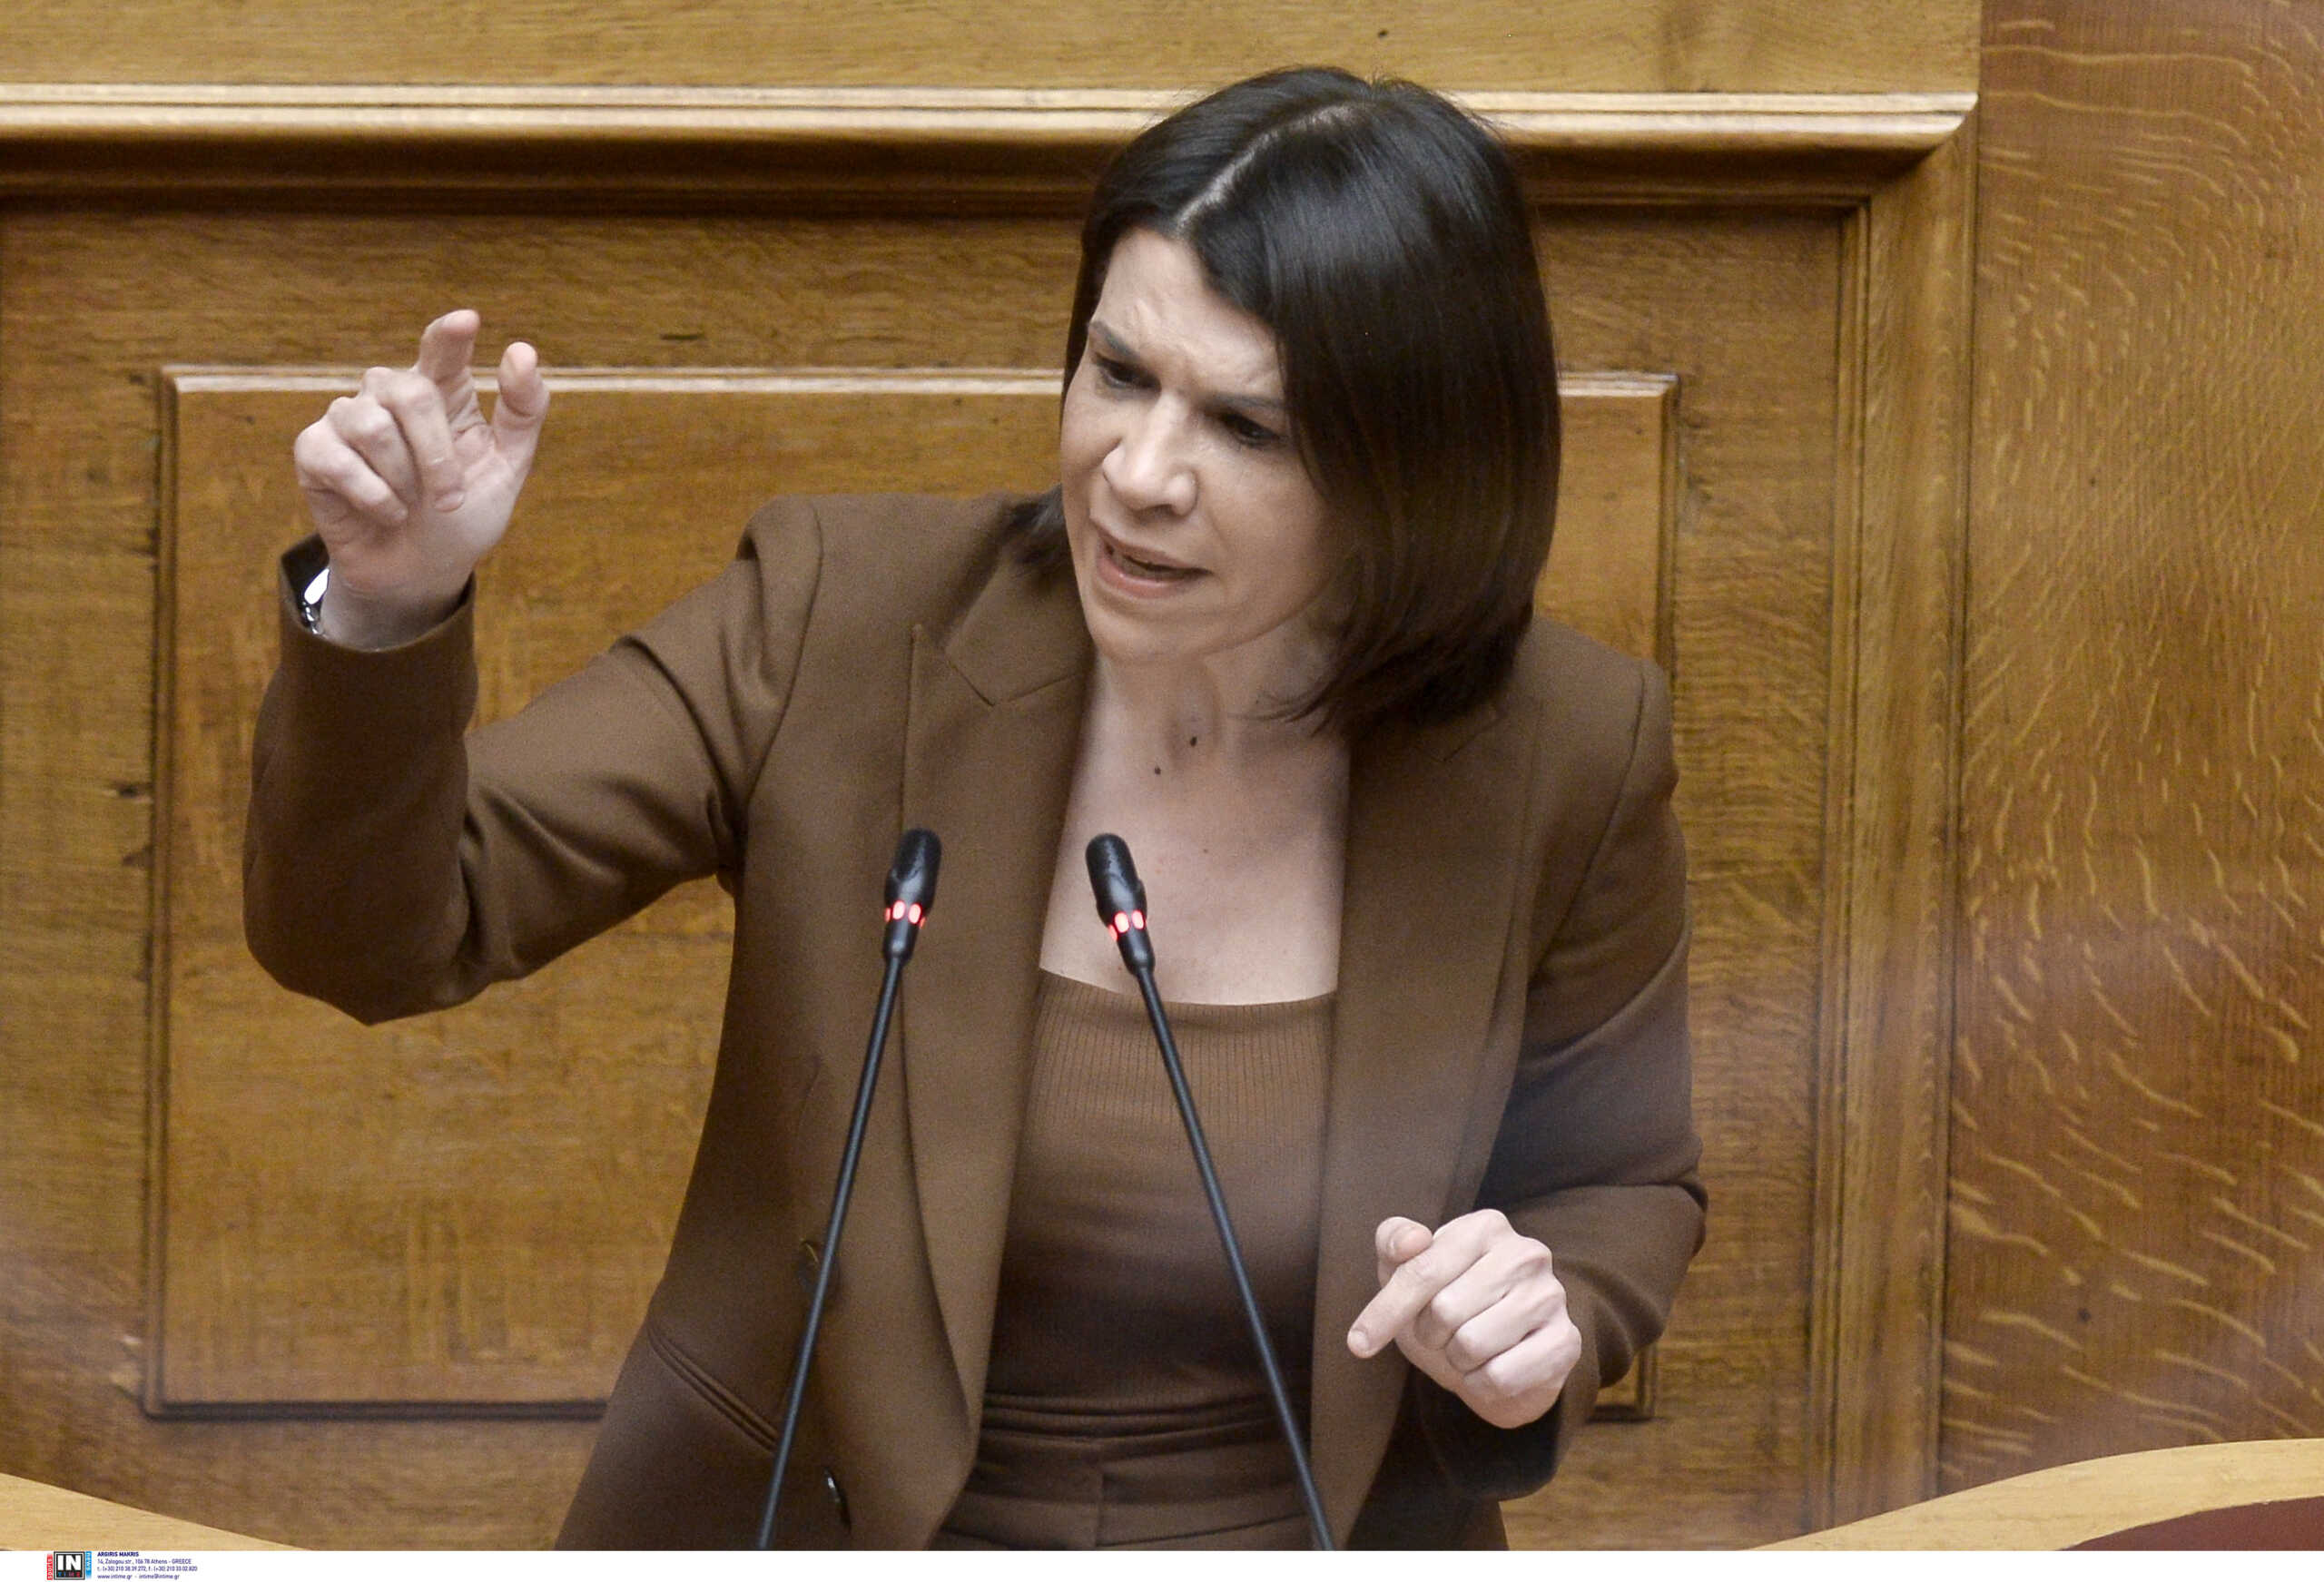 Θέμα ασυμβίβαστου από τη ΝΔ για βουλευτή του ΣΥΡΙΖΑ – «Θα ζητήσει ή όχι την άμεση παραίτησή της ο κ. Τσίπρας;»